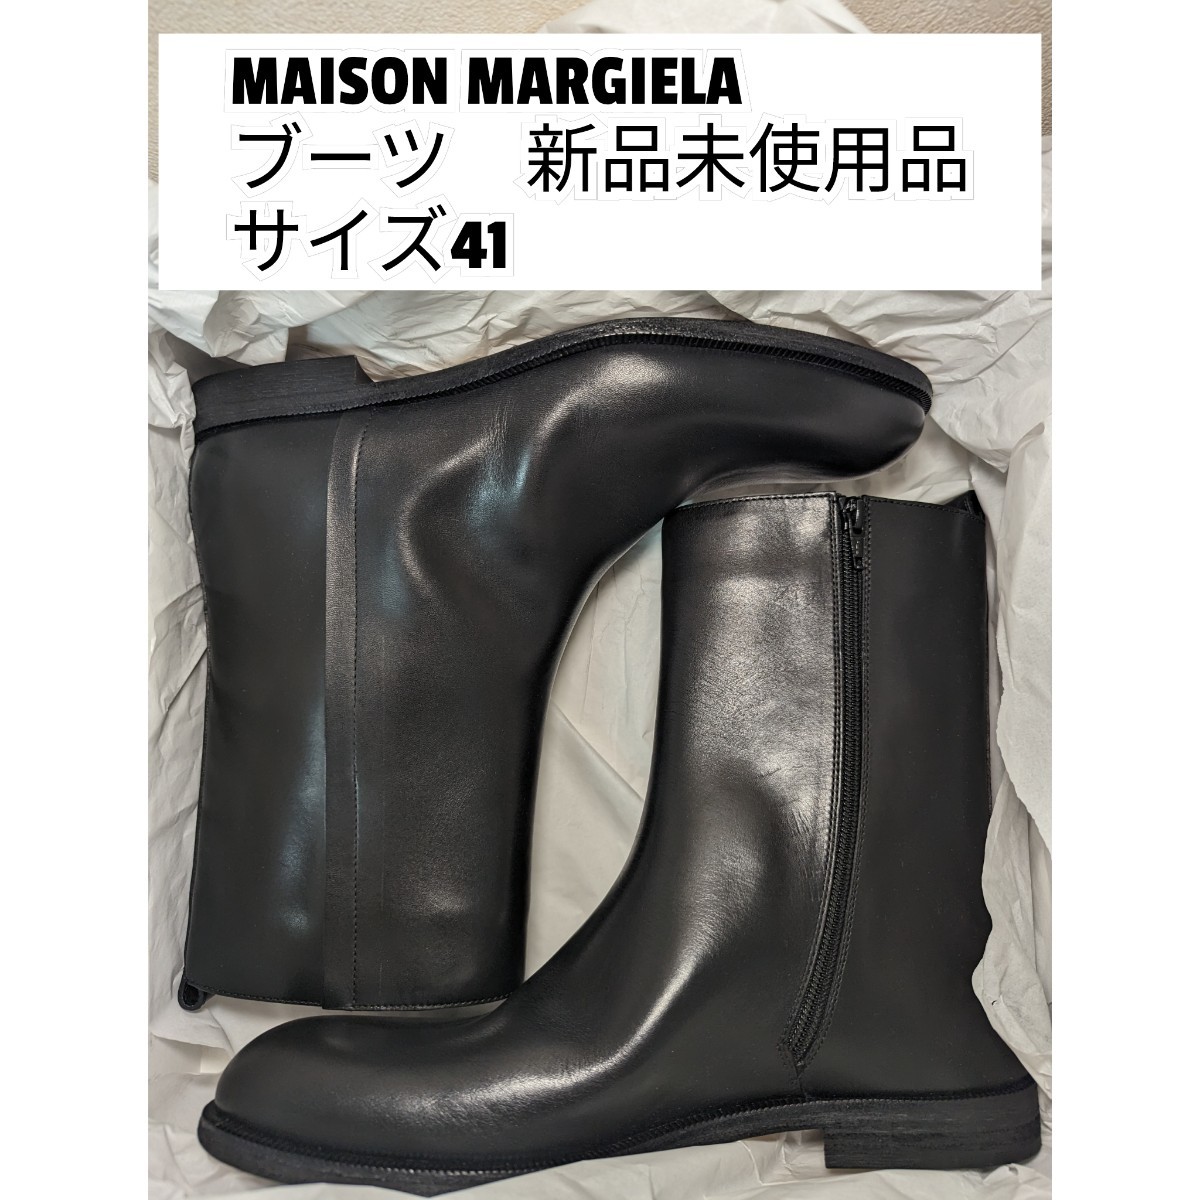 新しく着き Maison ブラック 新品 41 箱なし メゾンマルジェラ サイド